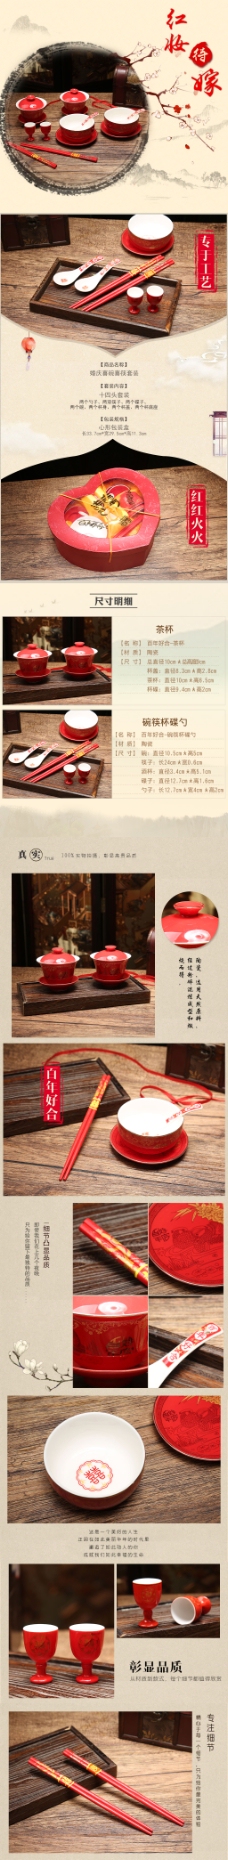 中国风情中国风碗筷婚庆用品详情页模版